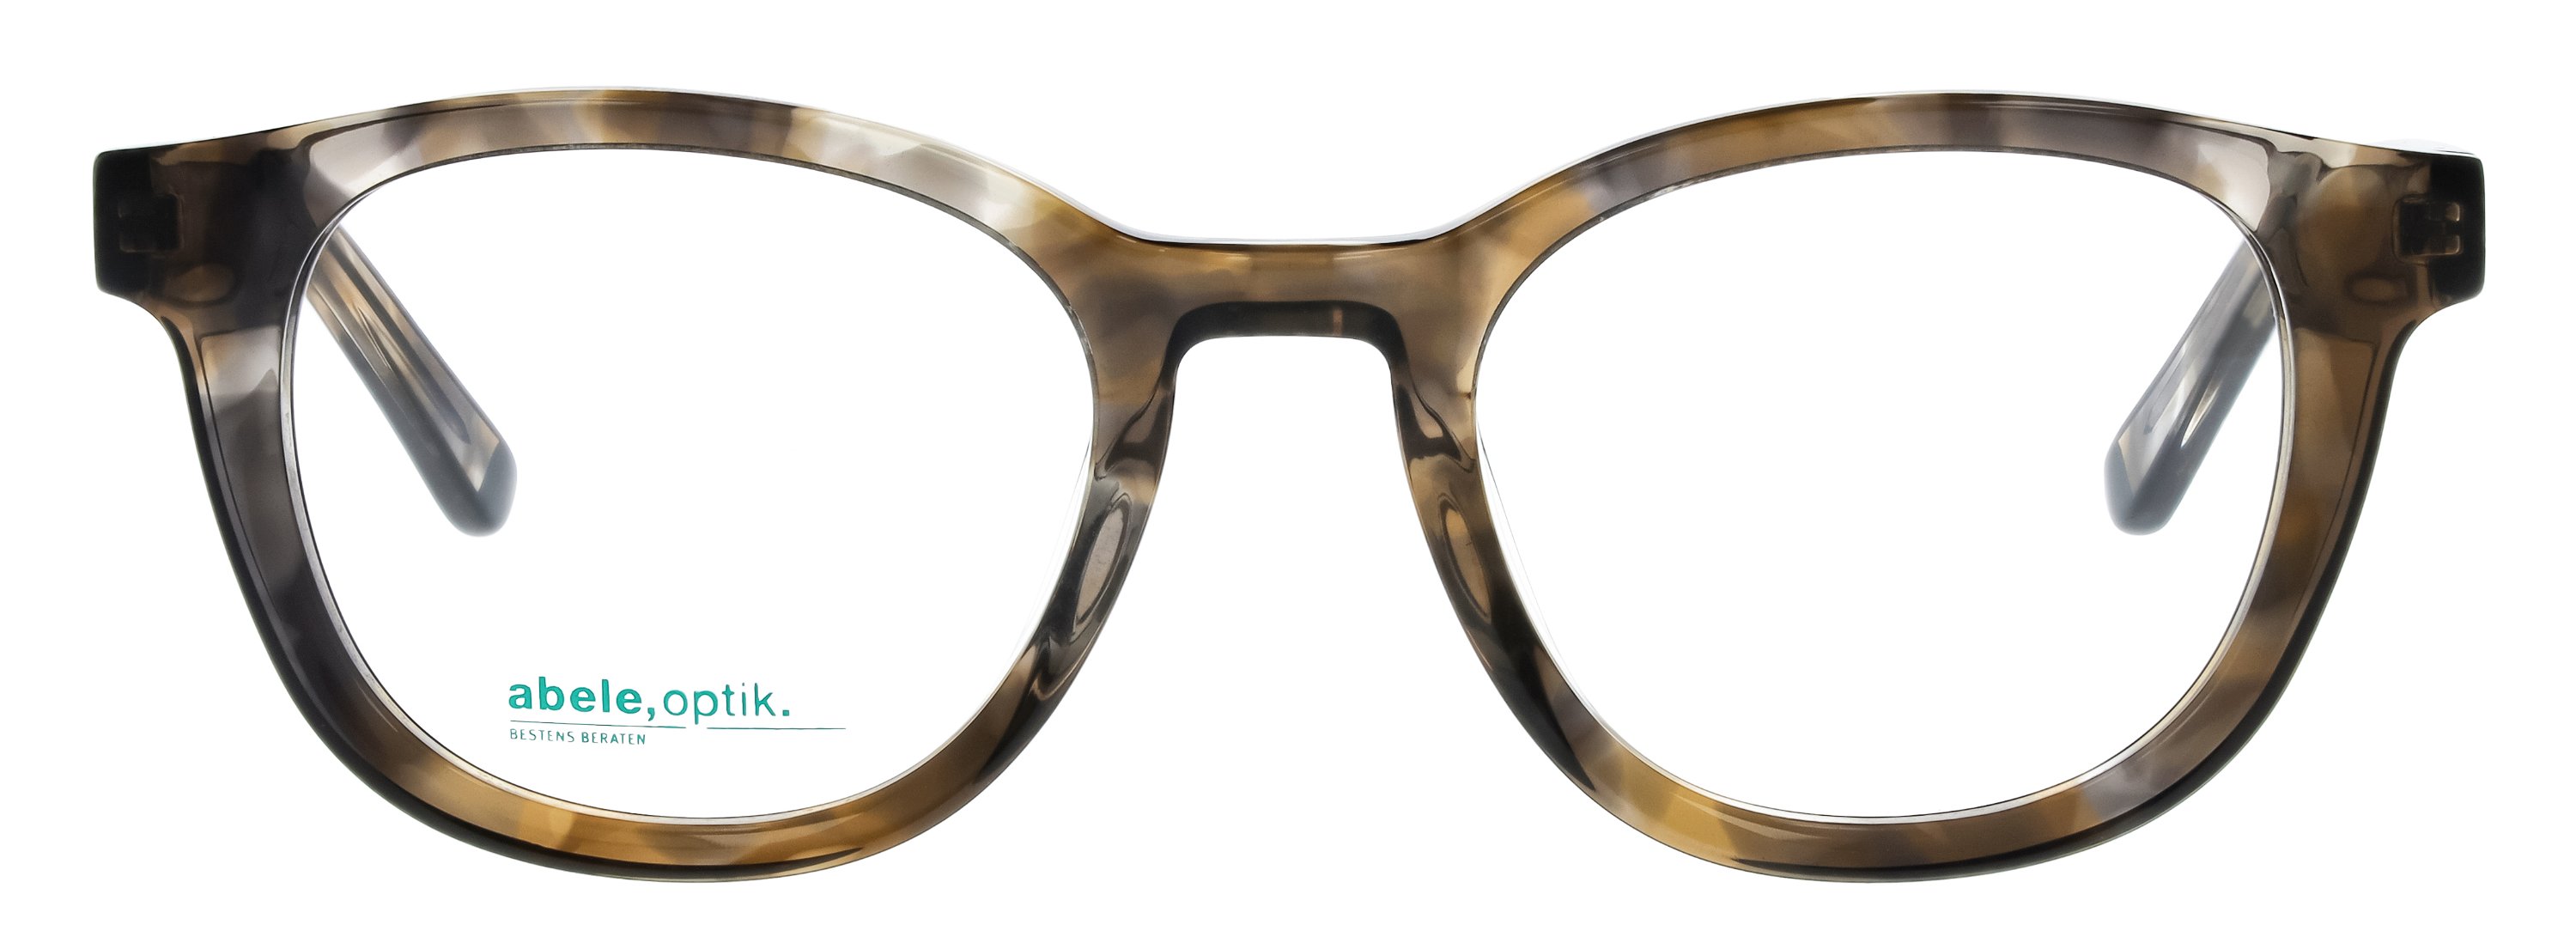 Das Bild zeigt die Korrektionsbrille 147761 von der Marke Abele Optik in braun-grau gemustert.